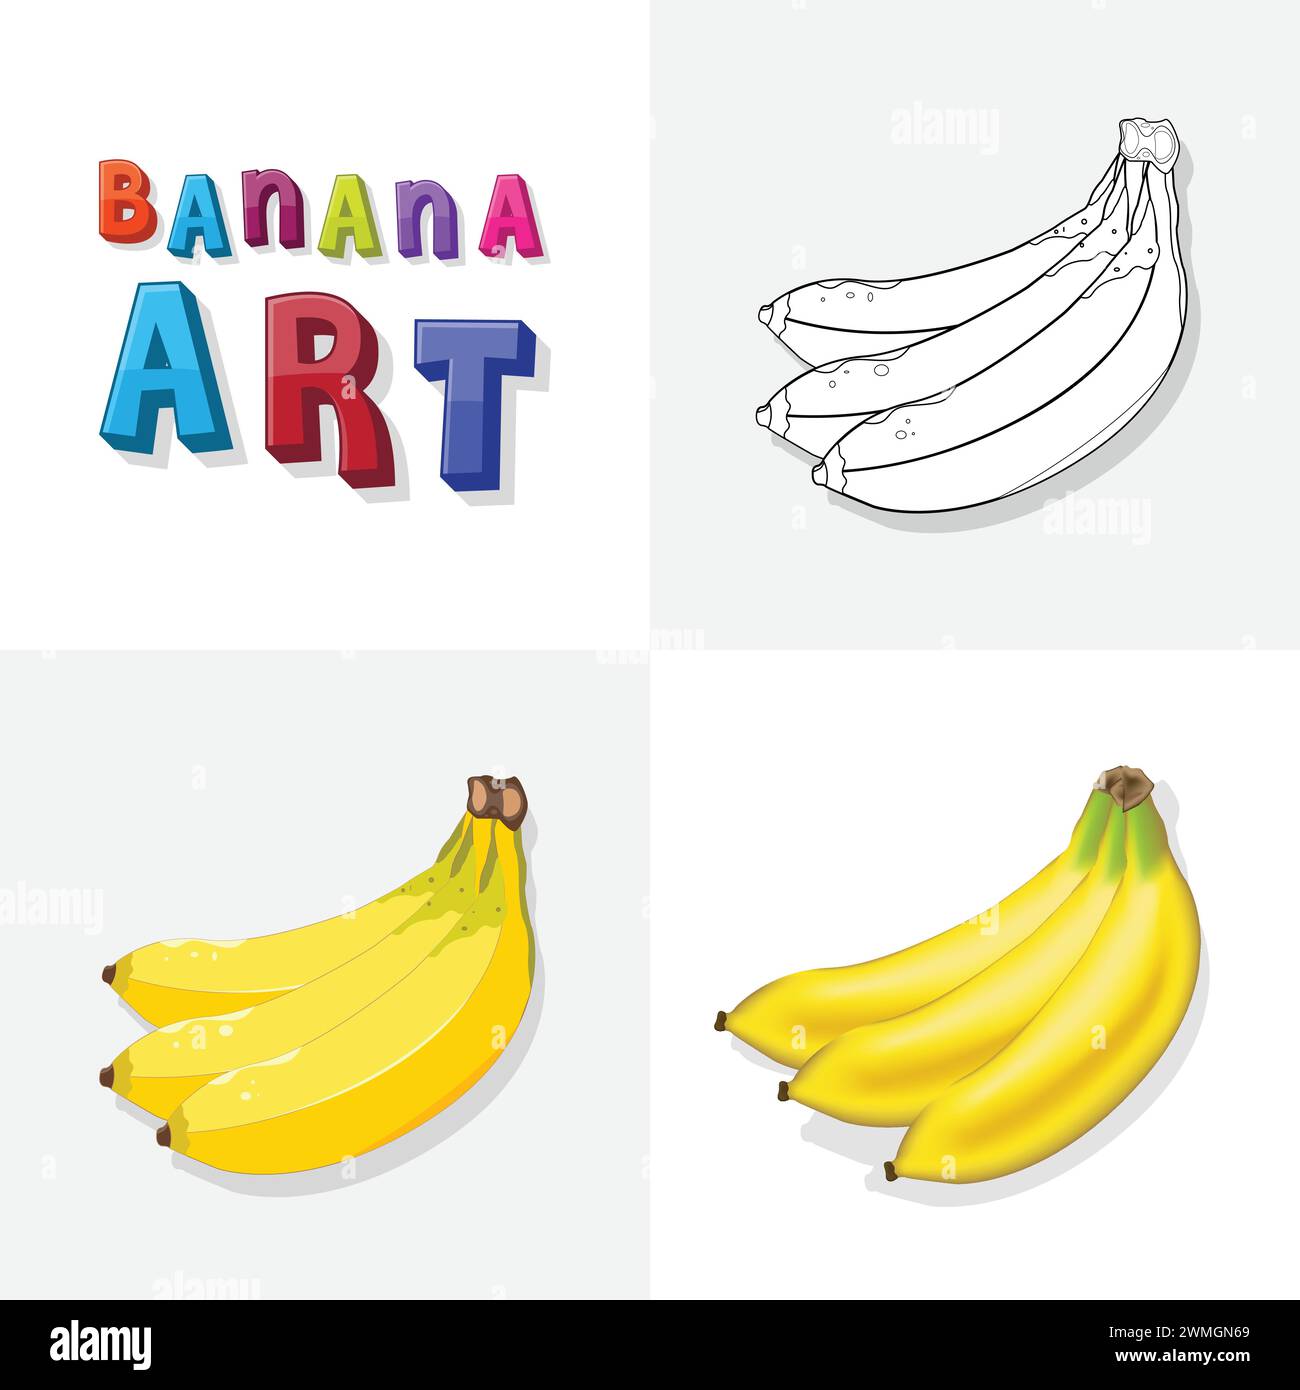 Croquis d'art de banane, page à colorier, illustration plate et réaliste de fruits de banane pour les enfants Illustration de Vecteur